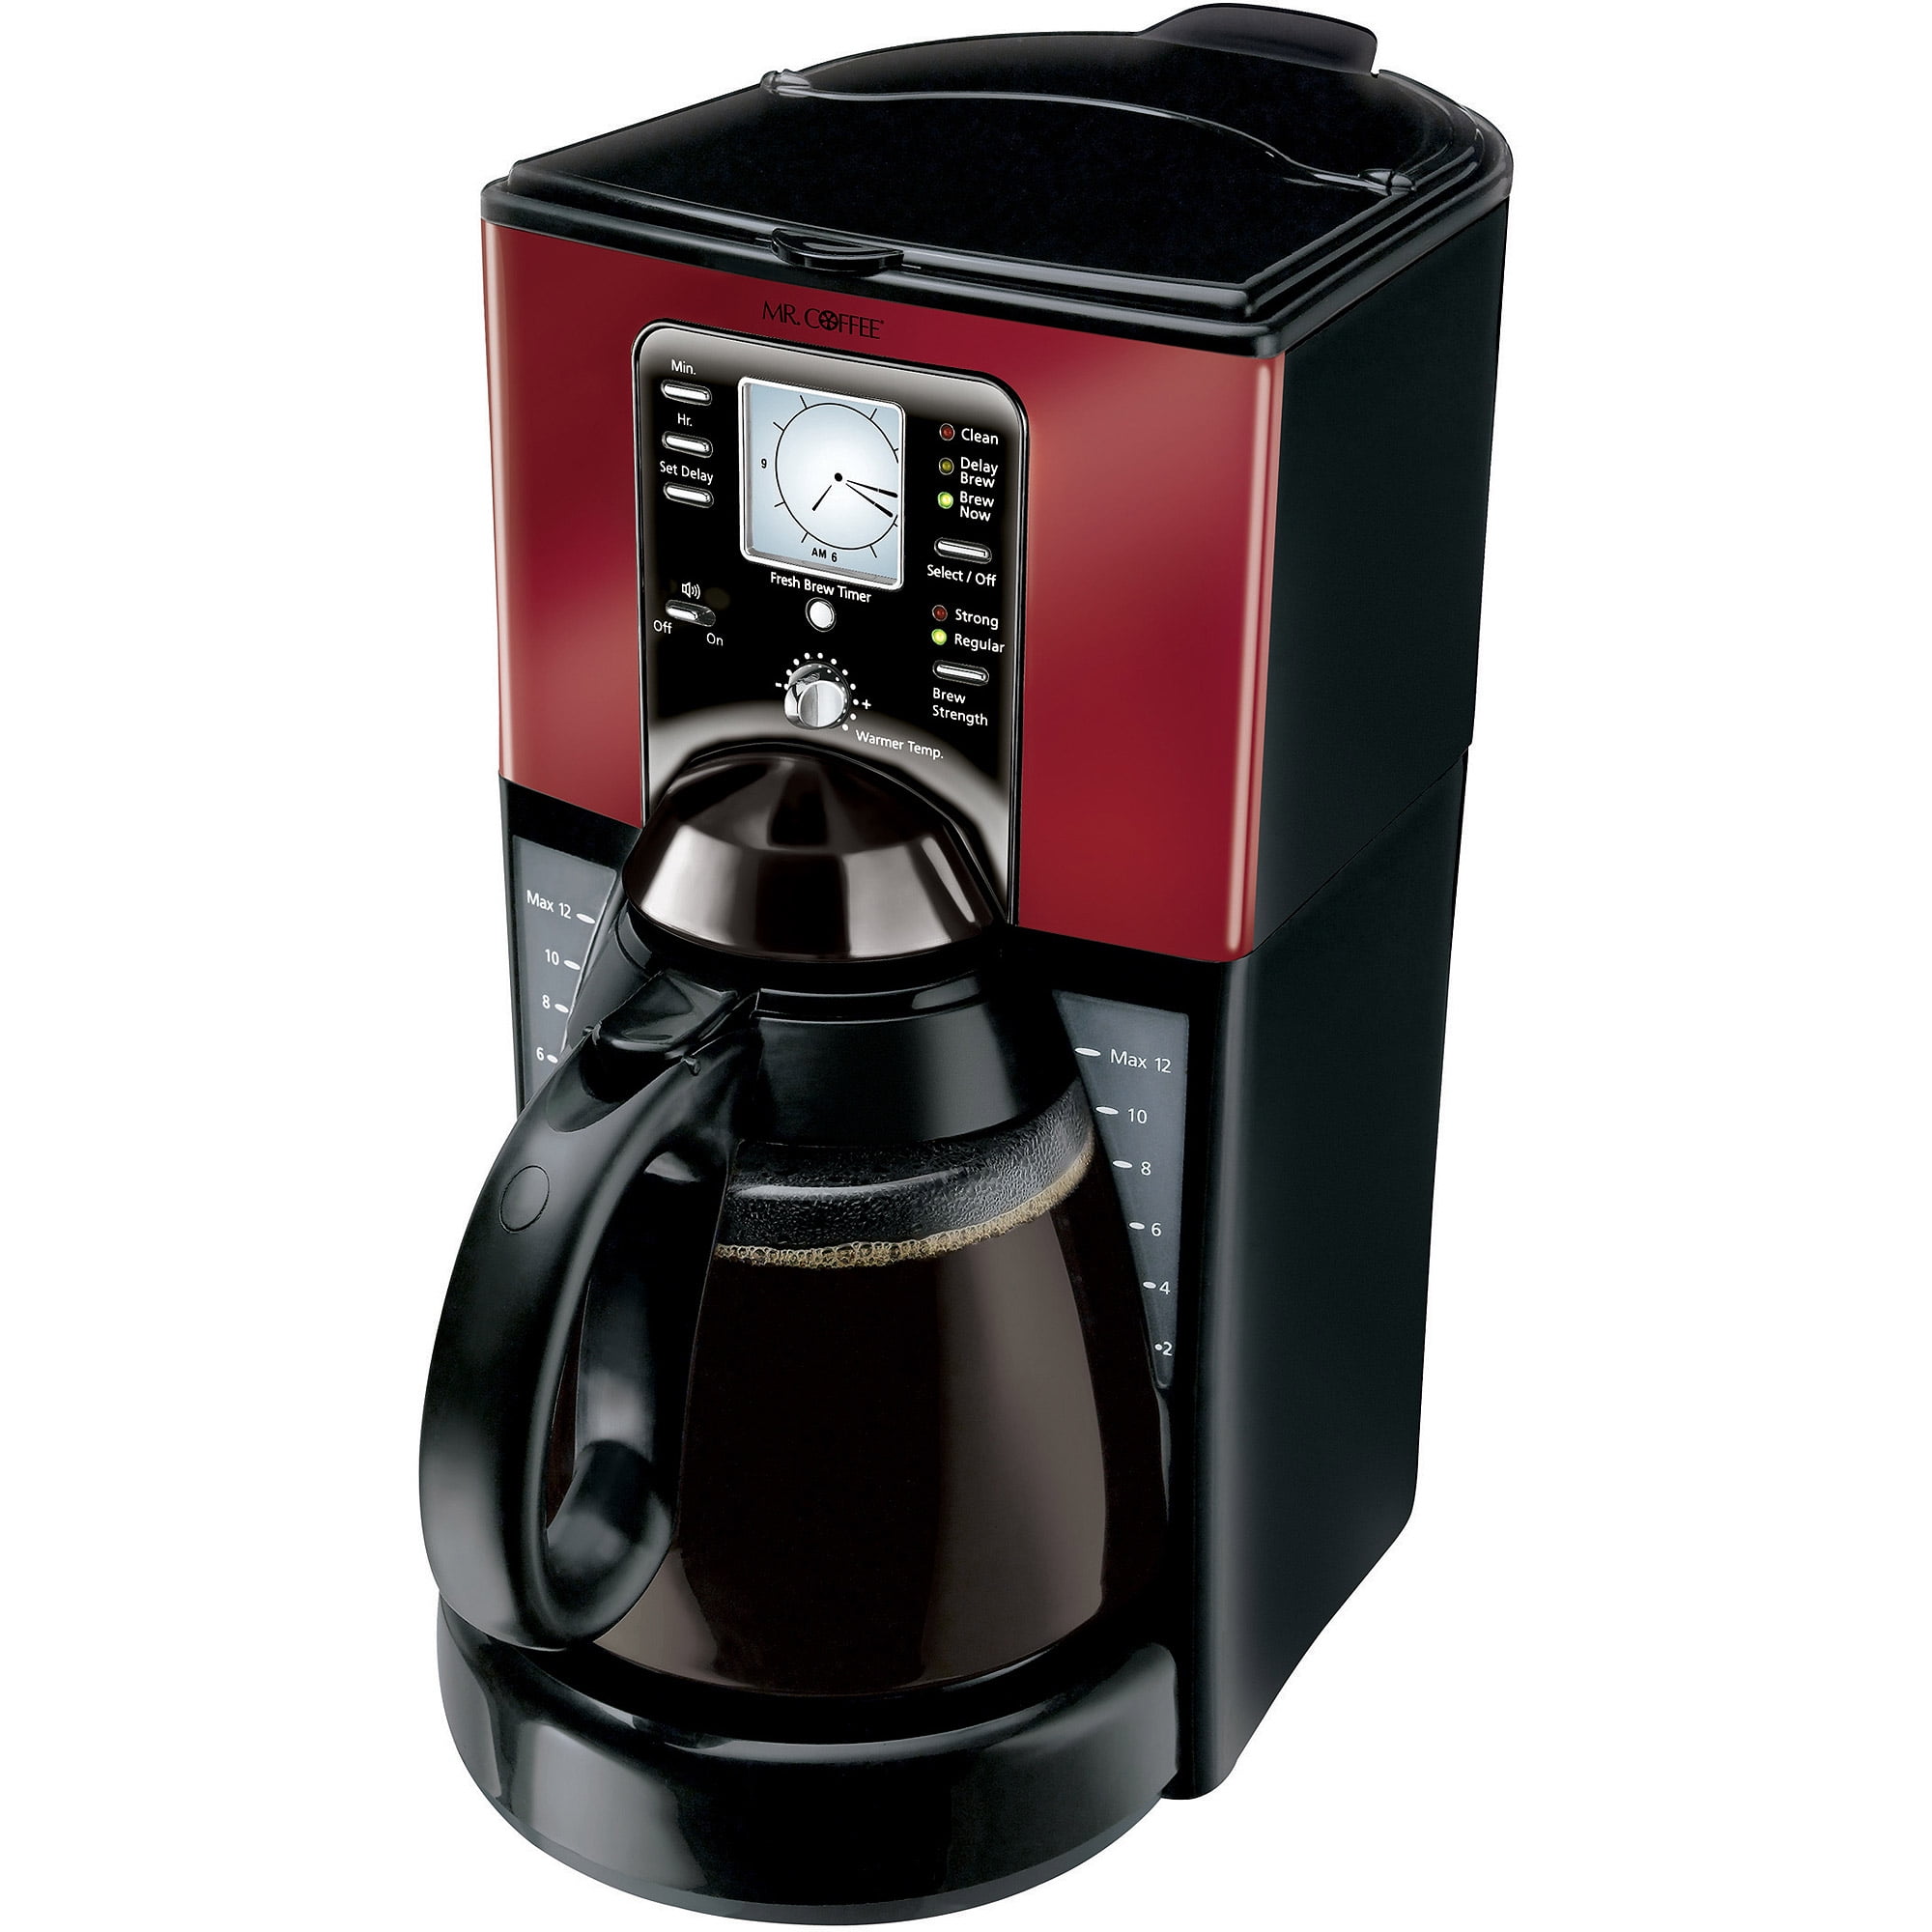 FinalPress coffee and tea maker from $49 (final hours) - Geeky Gadgets